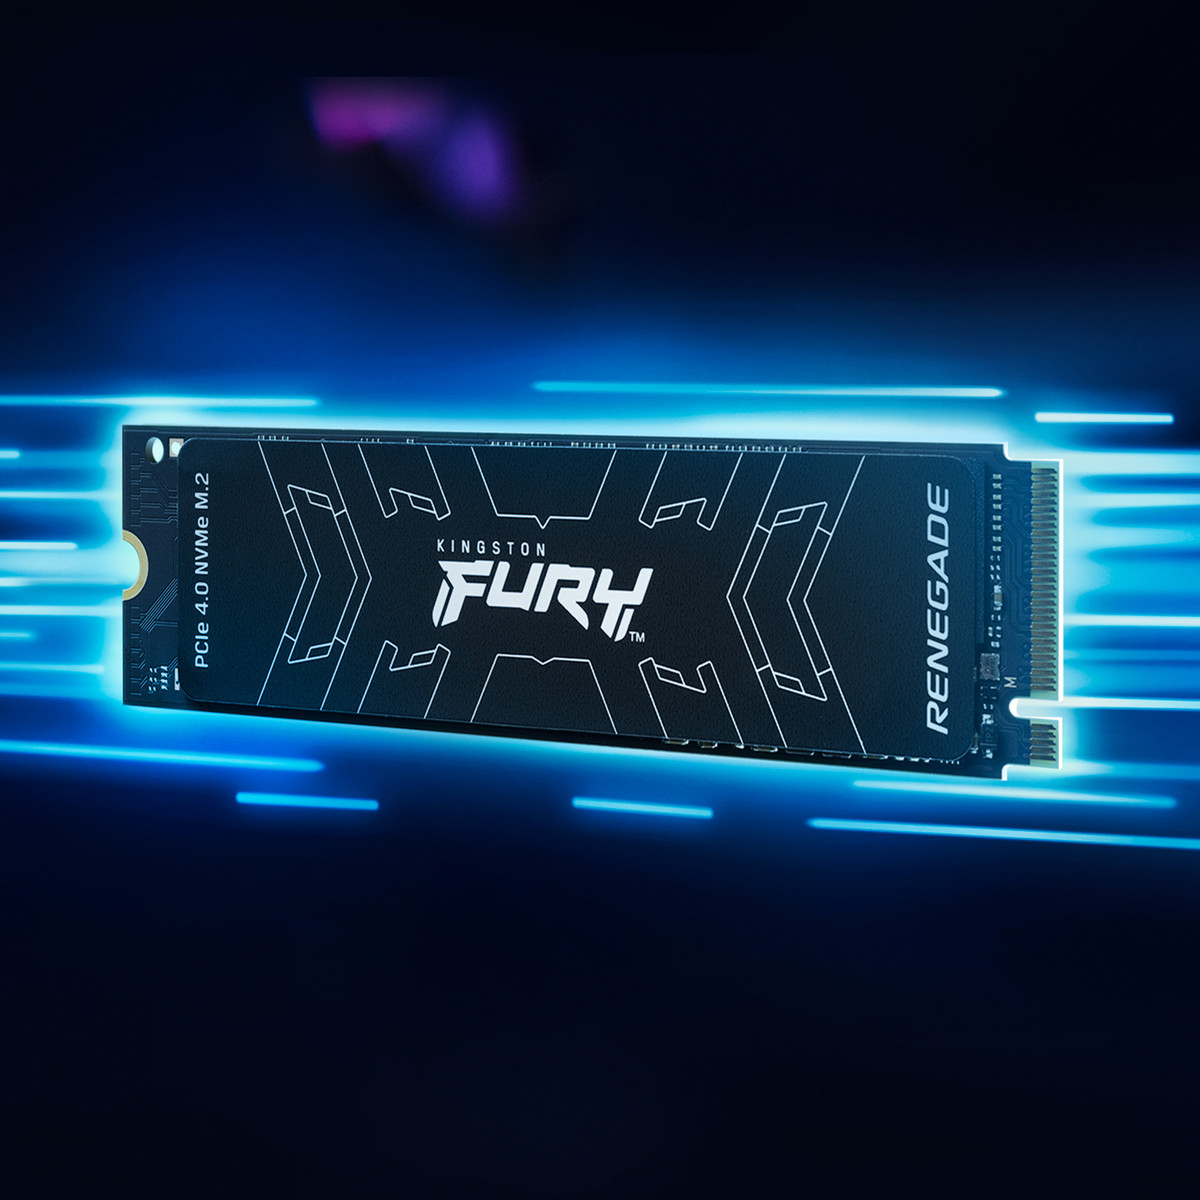 Kingston FURY anunció el nuevo SSD Kingston FURY Renegade, la unidad PCIe 4.0 NVMe M.2 de próxima generación para jugadores